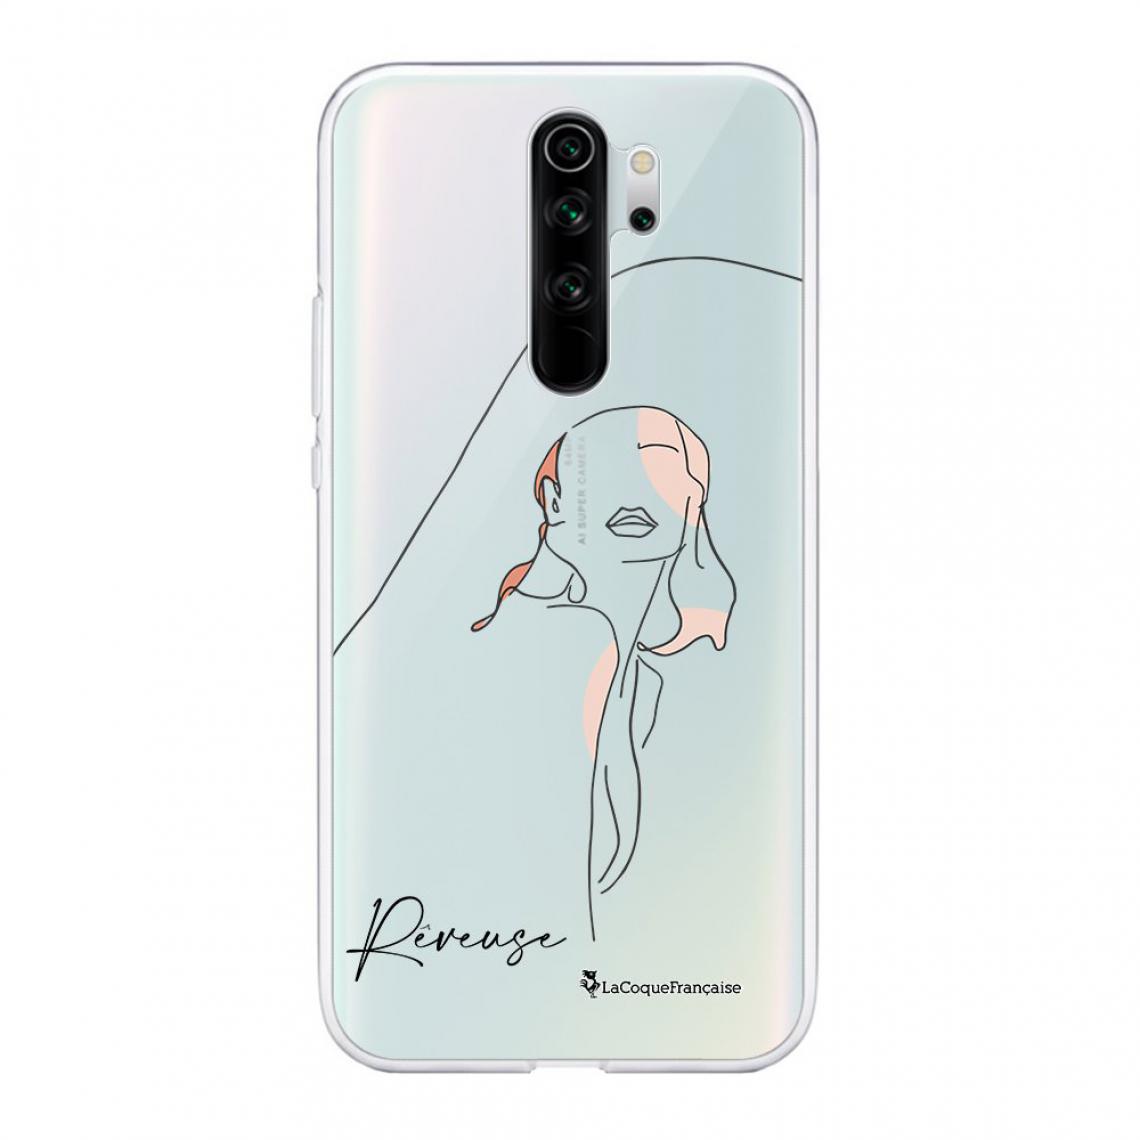 La Coque Francaise - Coque Xiaomi Redmi Note 8 Pro 360 intégrale avant arrière transparente - Coque, étui smartphone